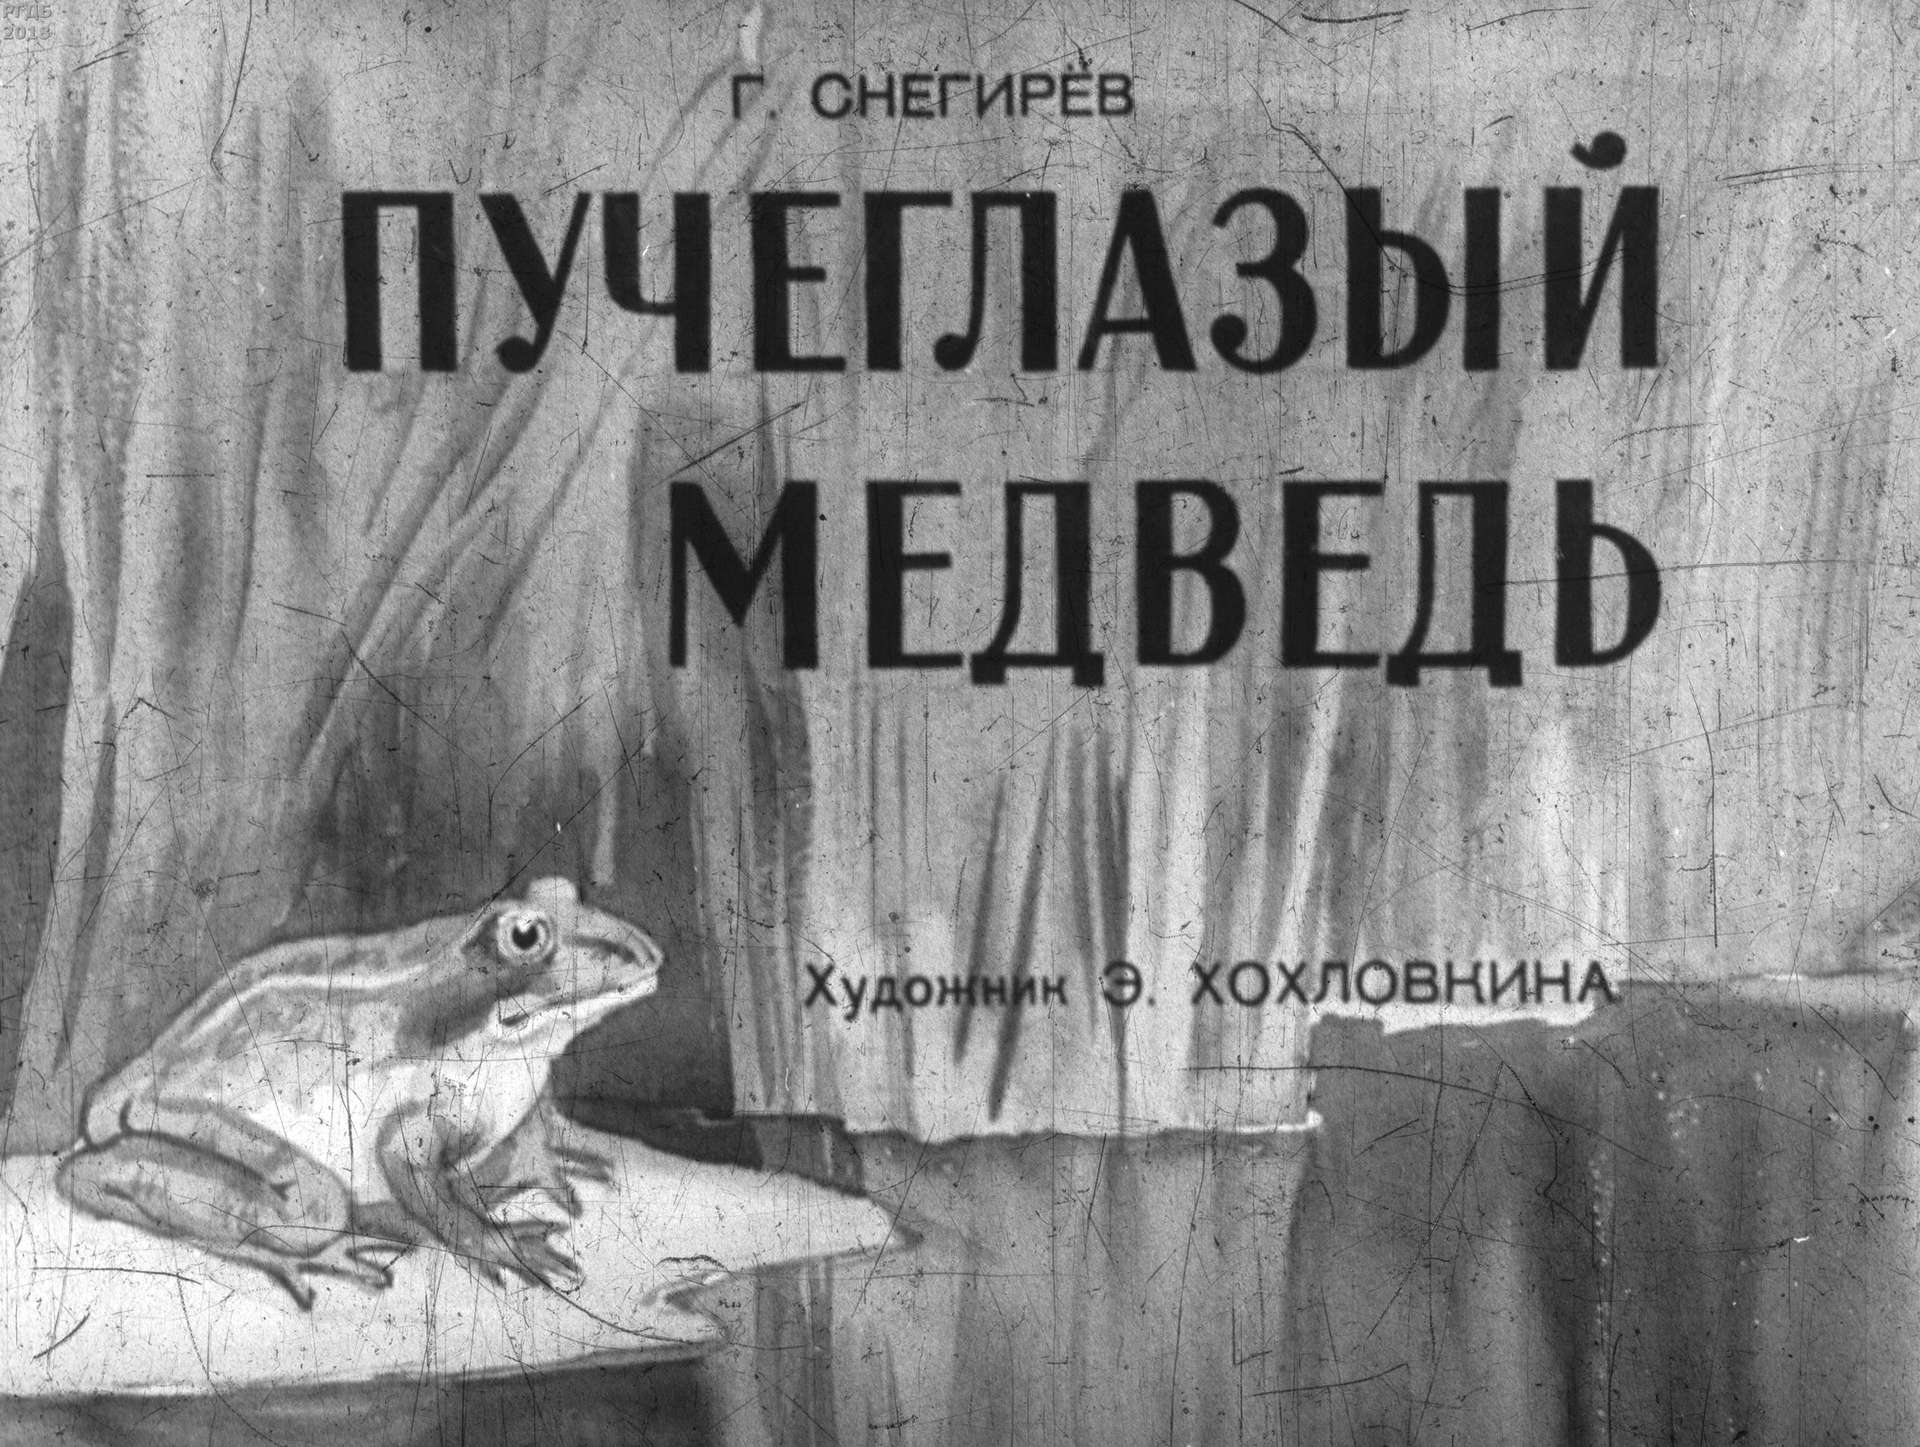 Снегирев Геннадий Яковлевич - Пучеглазый медведь - 1958